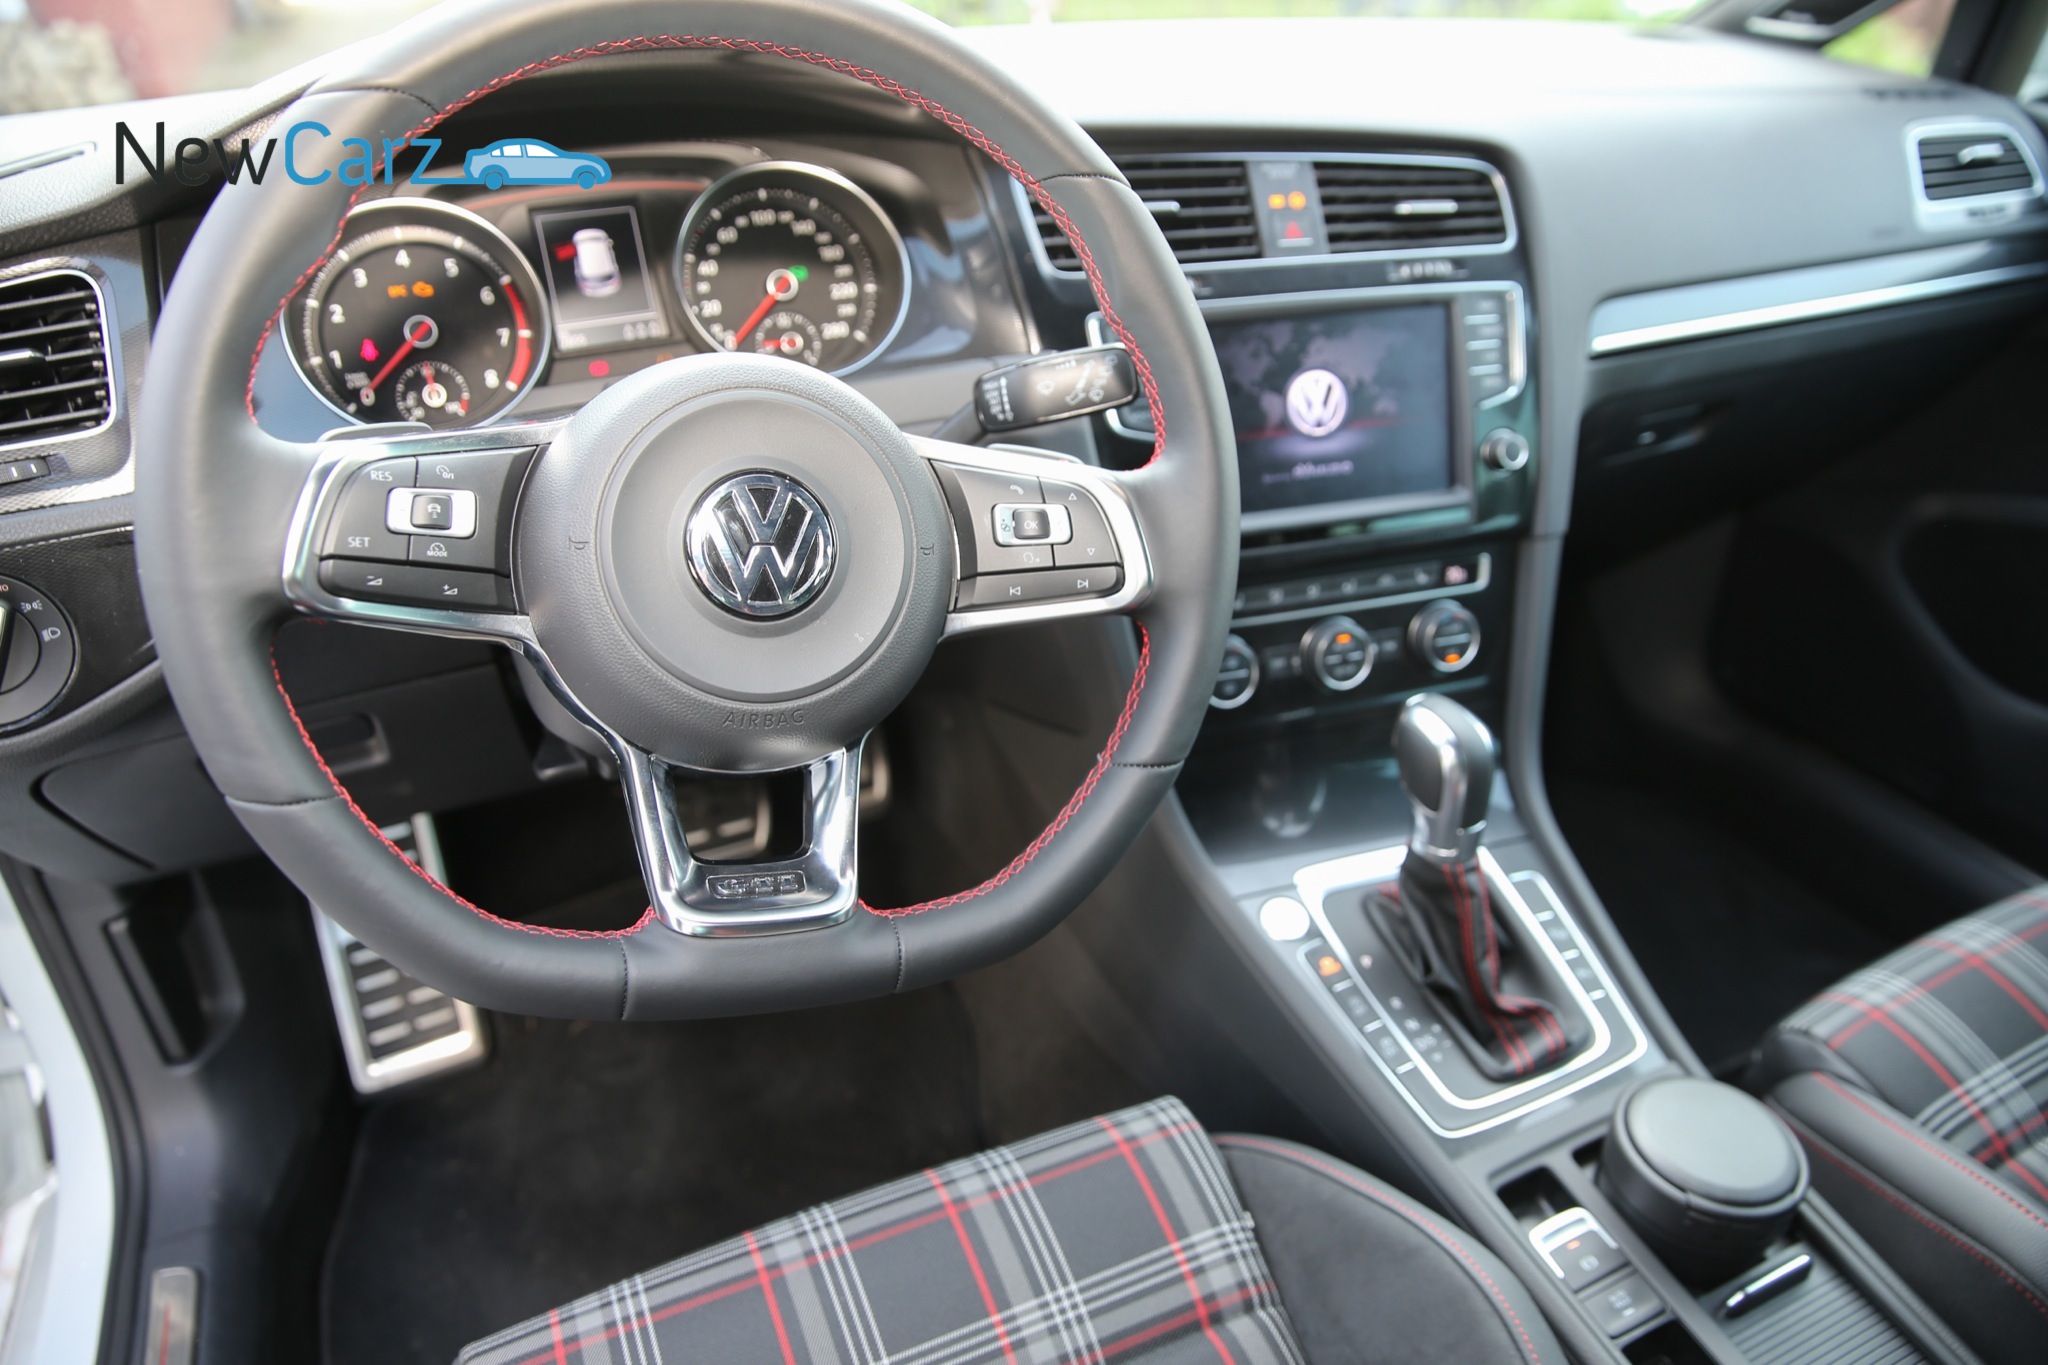 Volkswagen Golf Gti Performance Sport Furs Volk Newcarz De